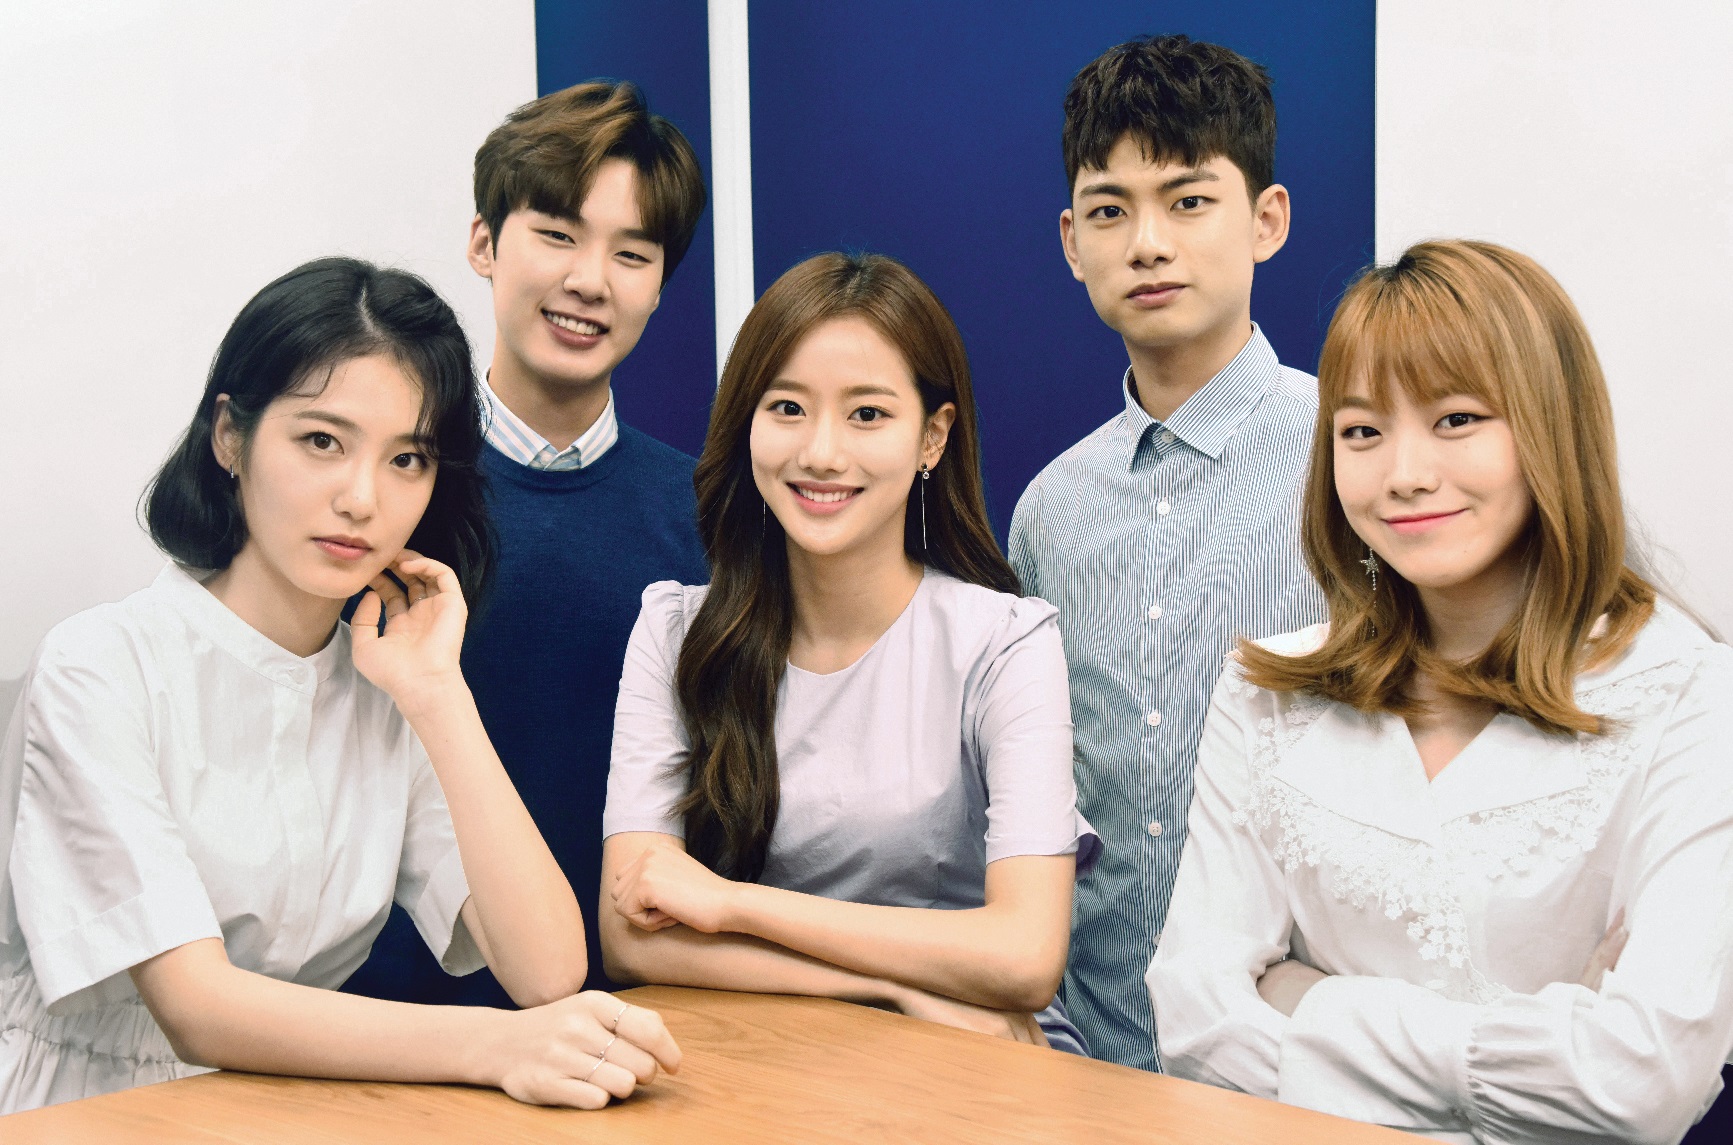 웹드라마 ‘에이틴’ 배우들. 왼쪽부터 신예은, 김동희, 이나은, 의현, 김수현. 최해국 선임기자seaworld@seoul.co.kr